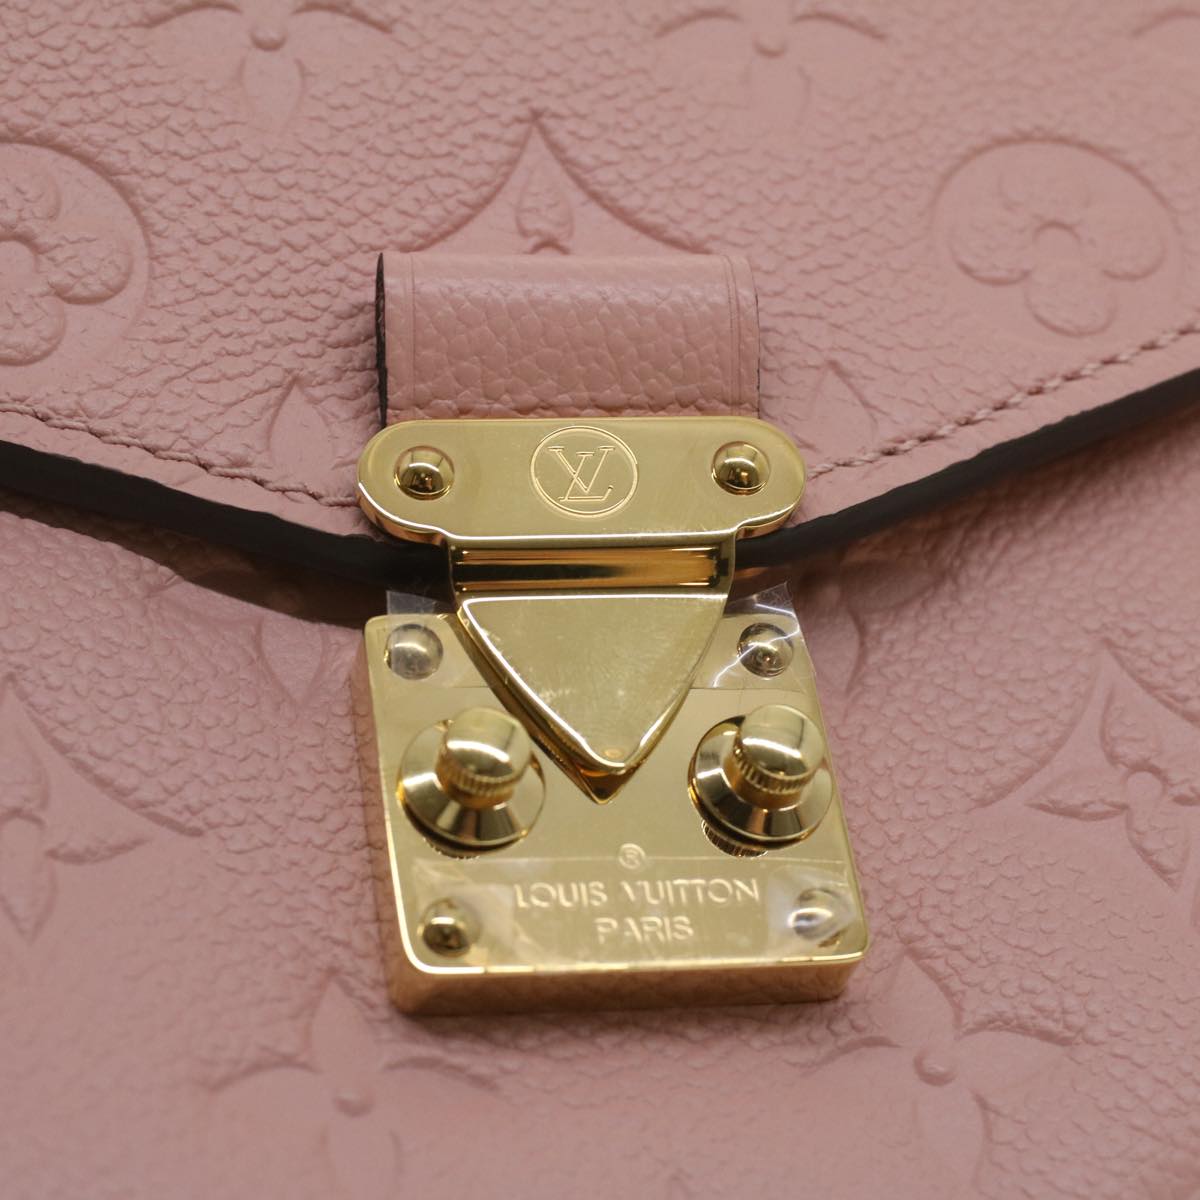 LOUIS VUITTON Empreinte Pochette Metis MM Hand Bag 2way Pink M44018 LV Auth S106